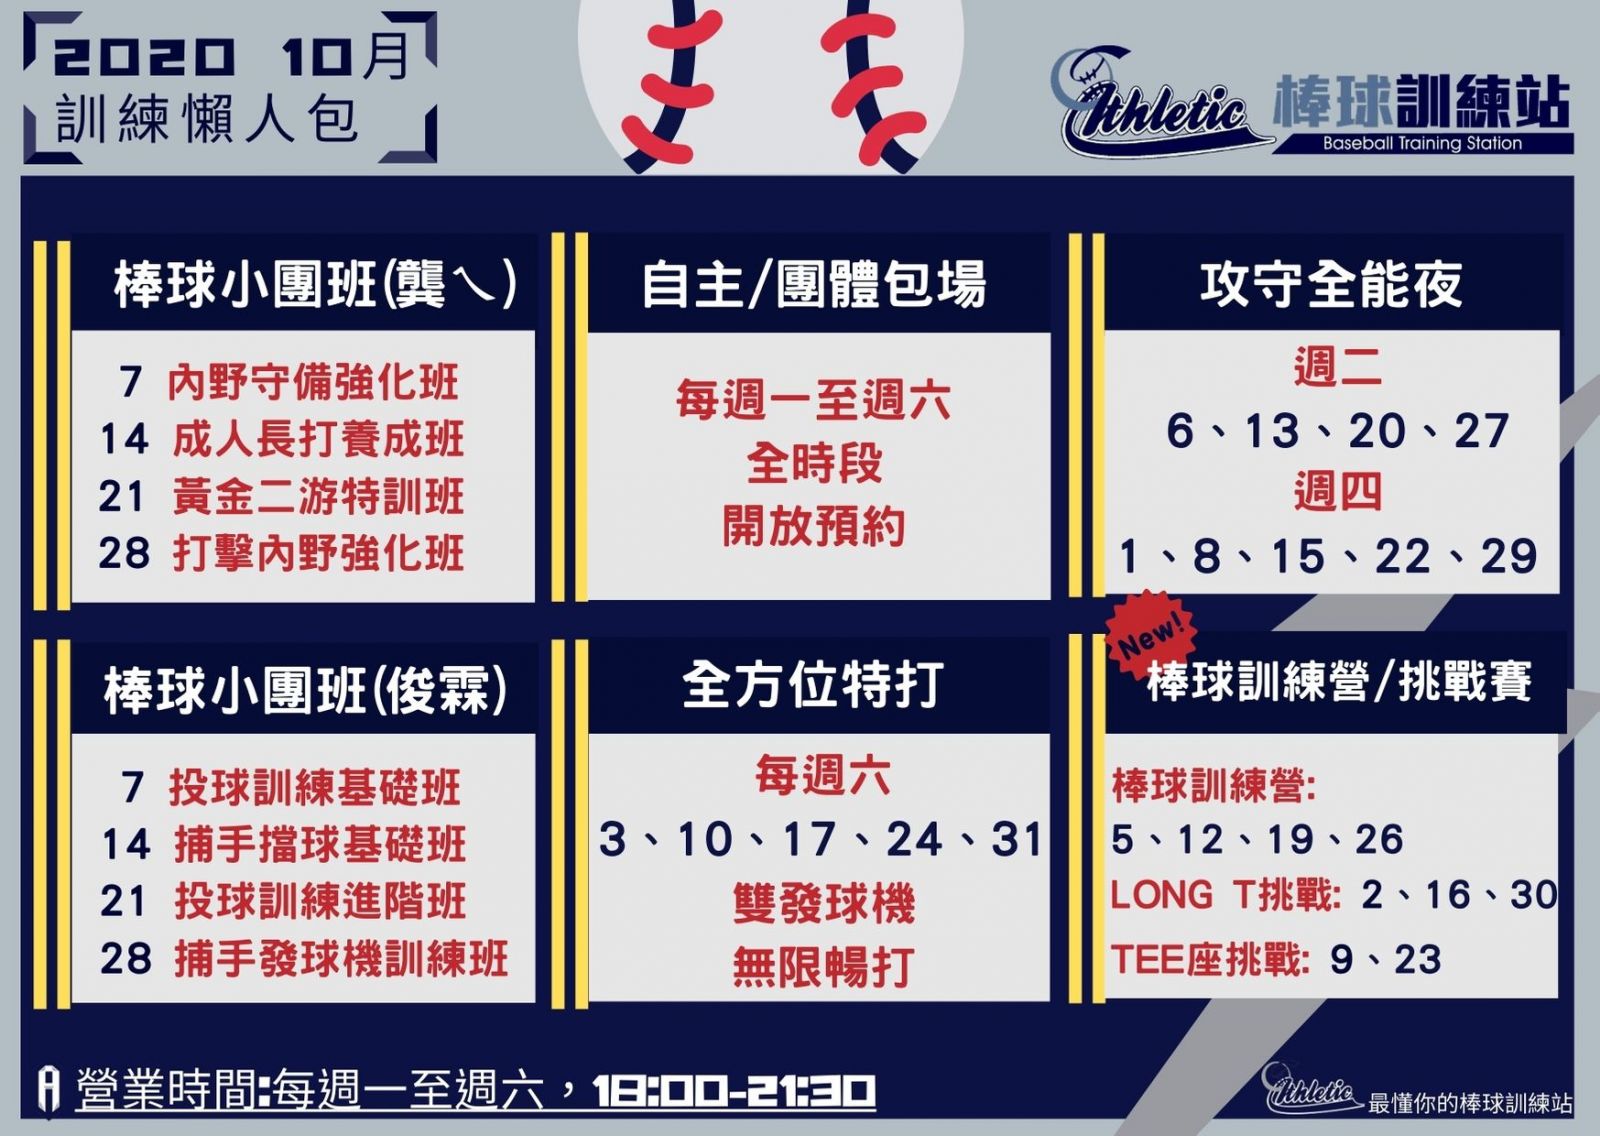 賽事及消息-棒球訓練站10月課程表|雲林縣立斗六棒球場-Douliu Baseball Stadium